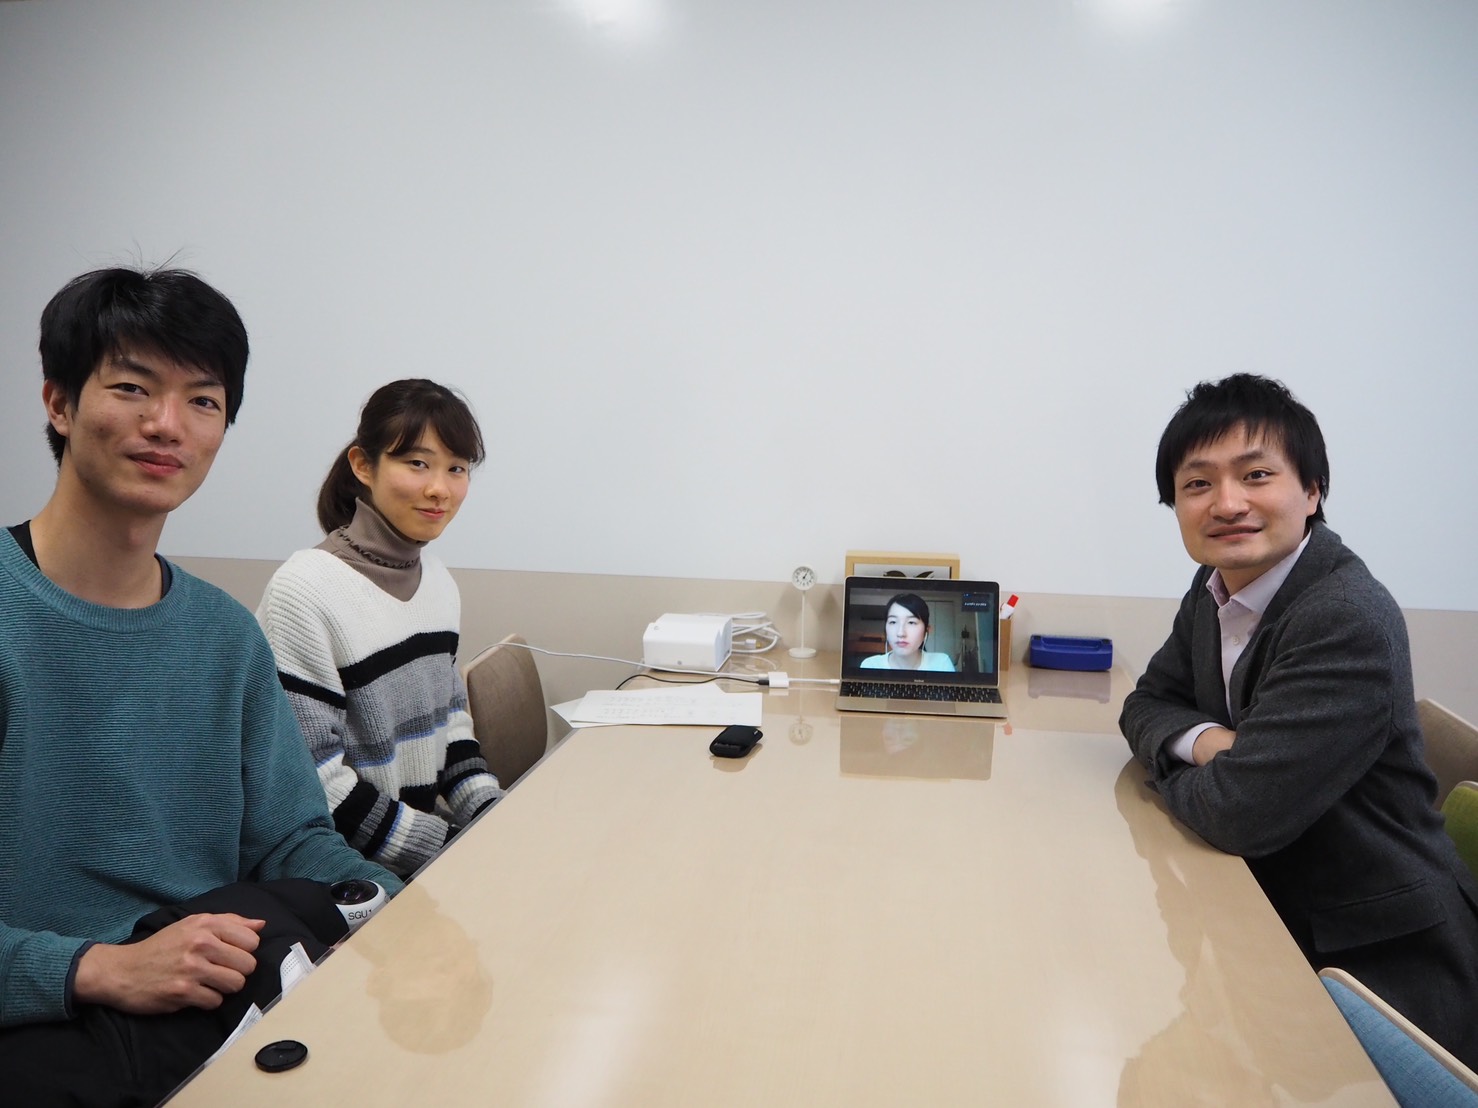 インタビューの様子：左から砂子阪、城下、北村（PC画面内）、黒田先生<br />
※インタビューはマスク着用にて実施しました。